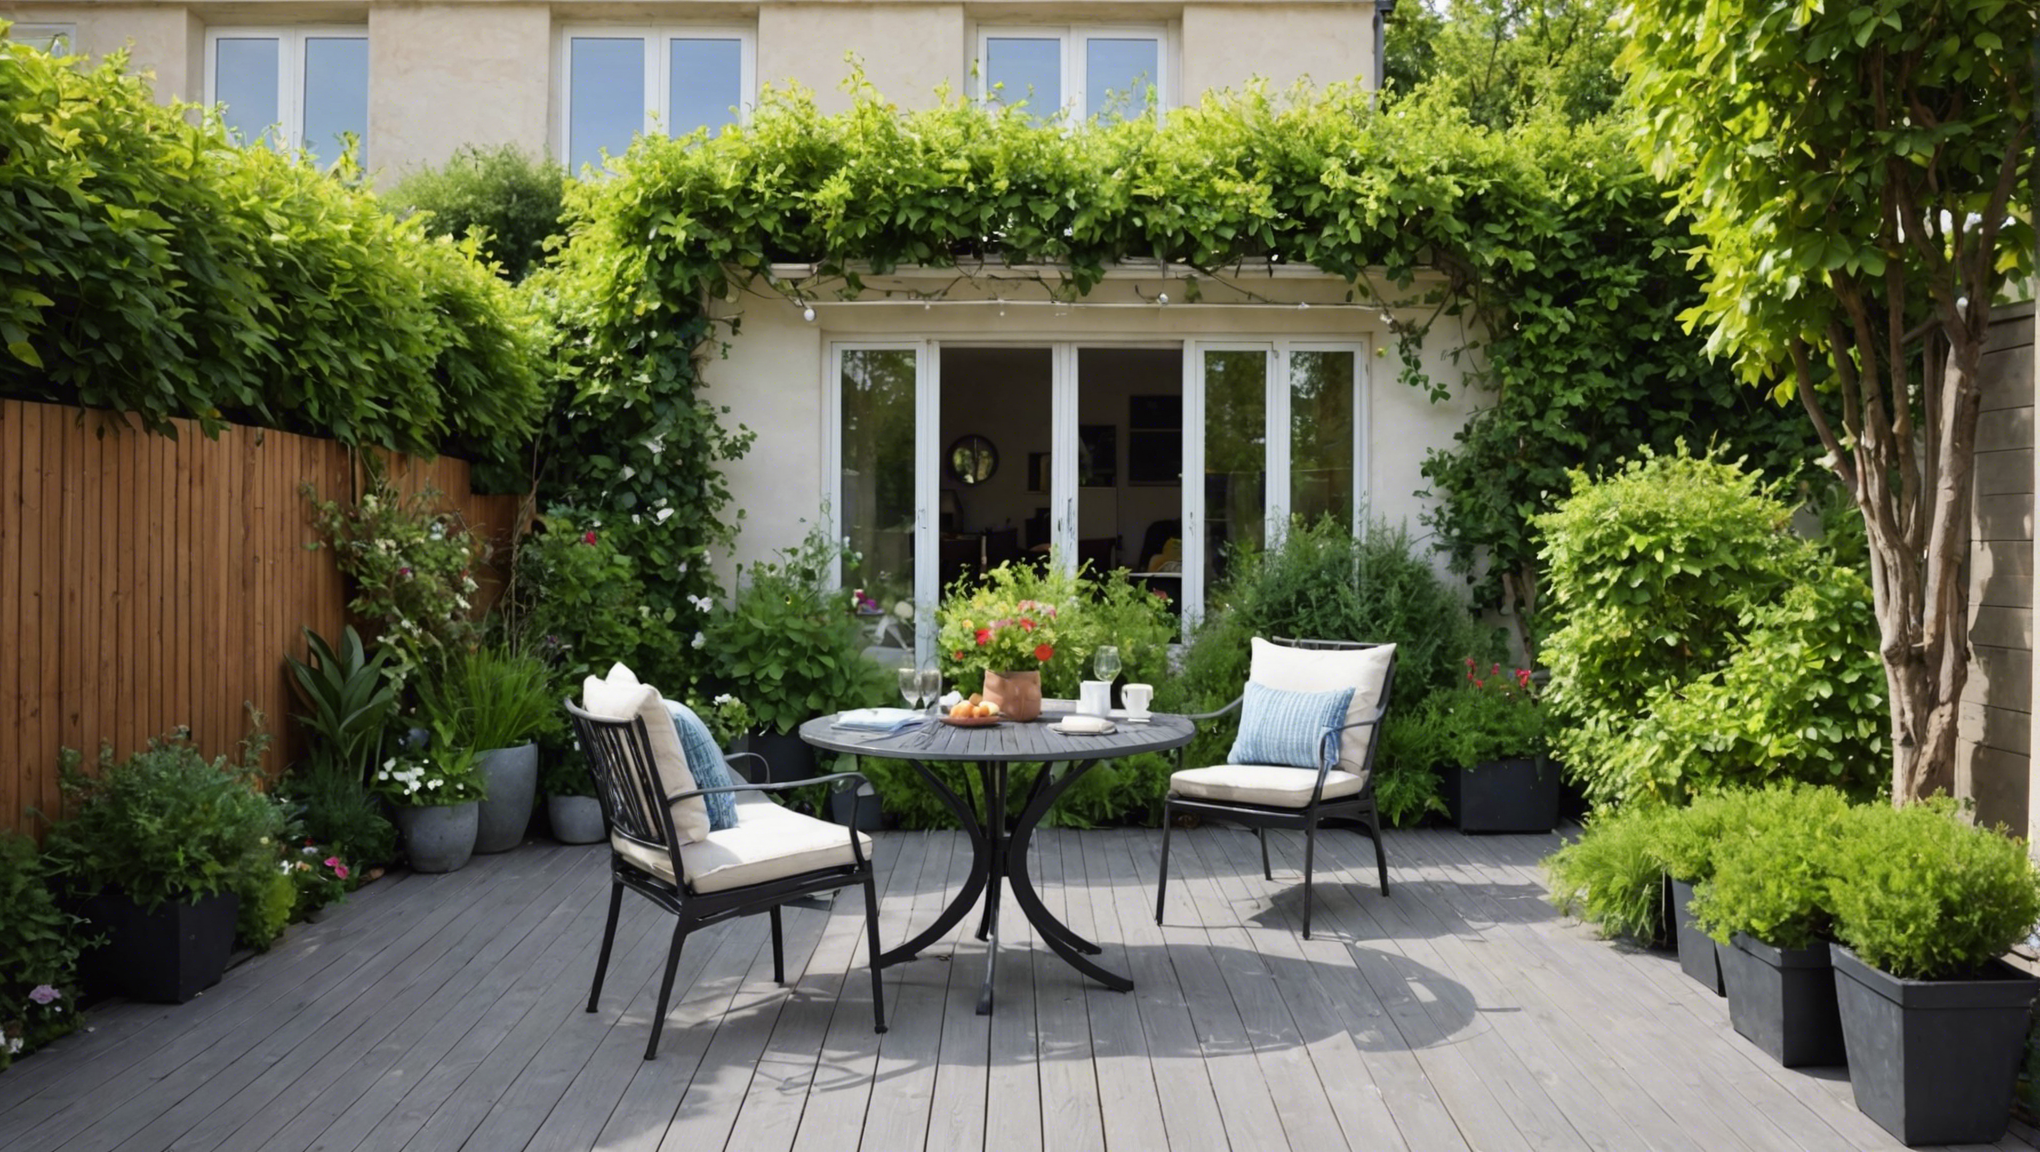 découvrez comment aménager un jardin devant sa maison avec une terrasse : idées d'aménagement, conseils de décoration et astuces pour créer un espace extérieur convivial.